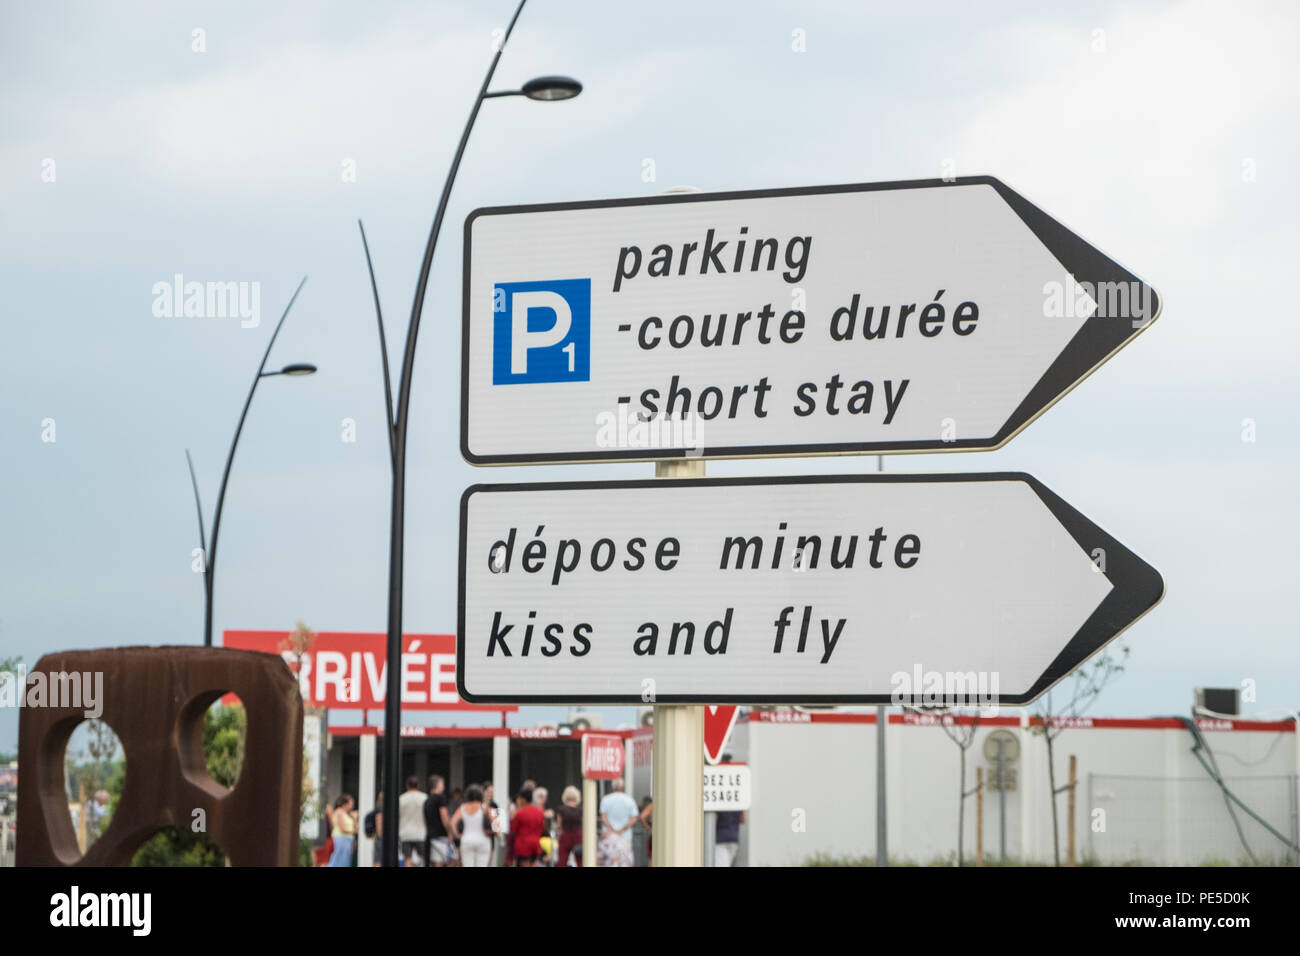 Car Parks  Carcassonne Airport